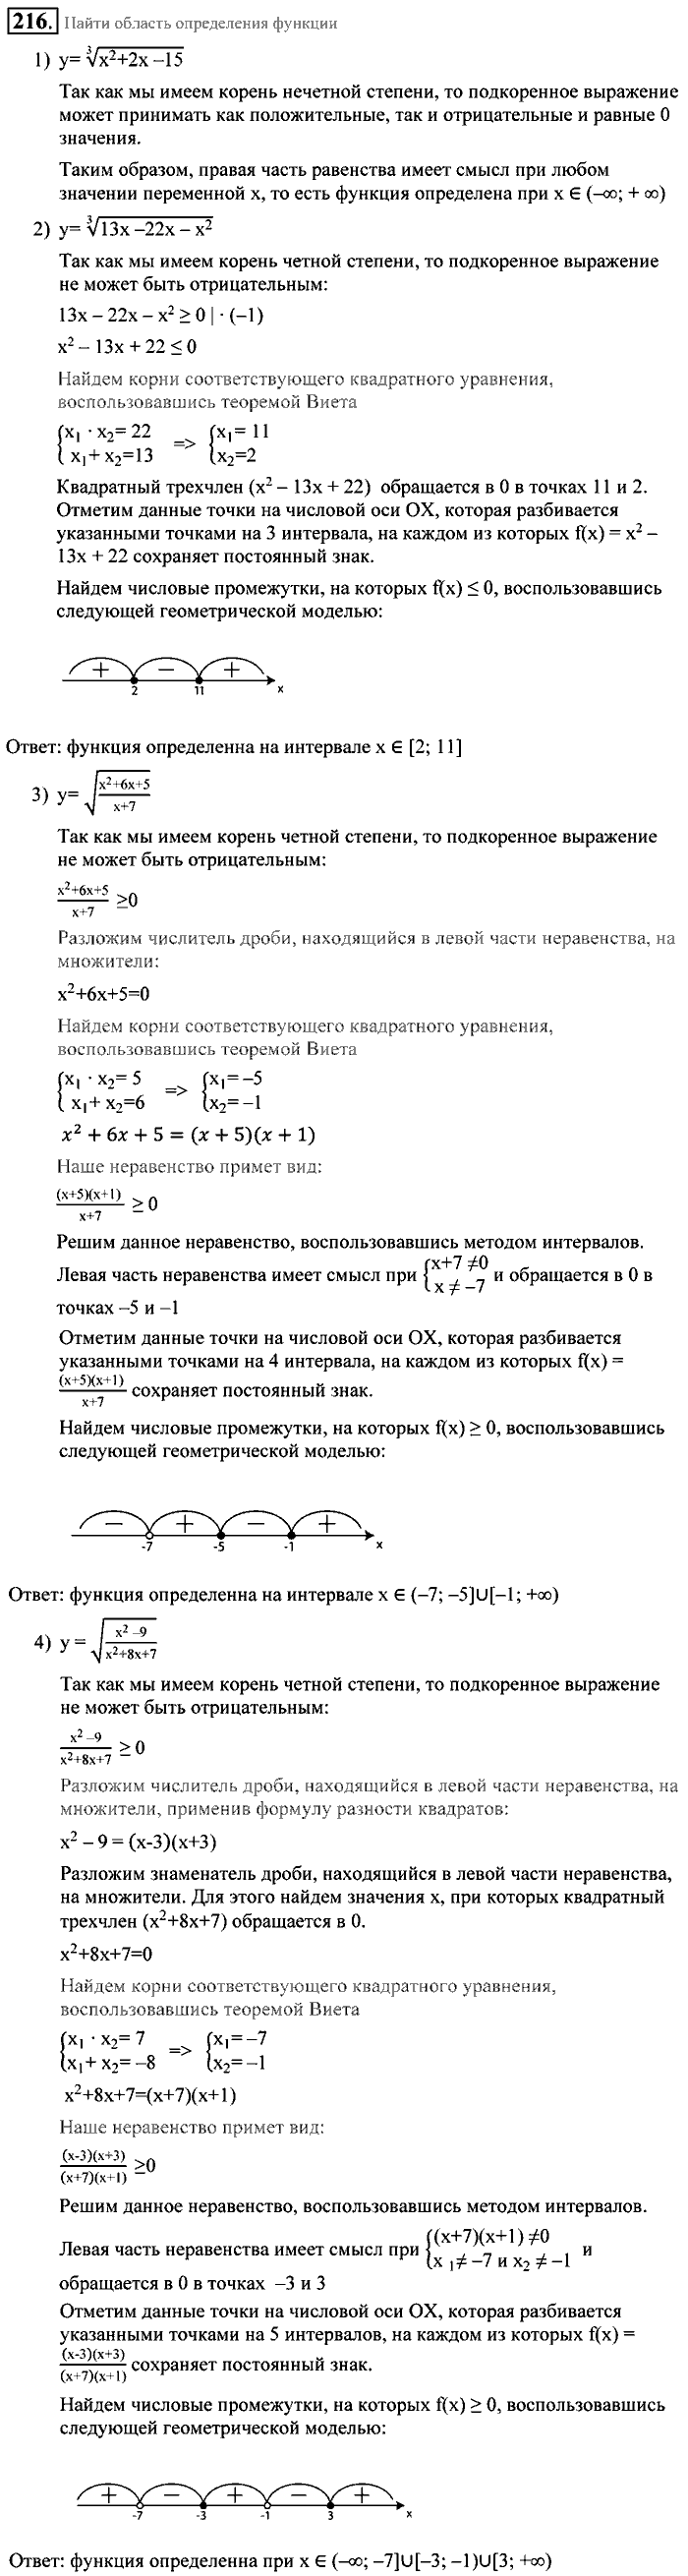 Алгебра, 9 класс, Алимов, Колягин, 2001, Проверь себя Задание: 216